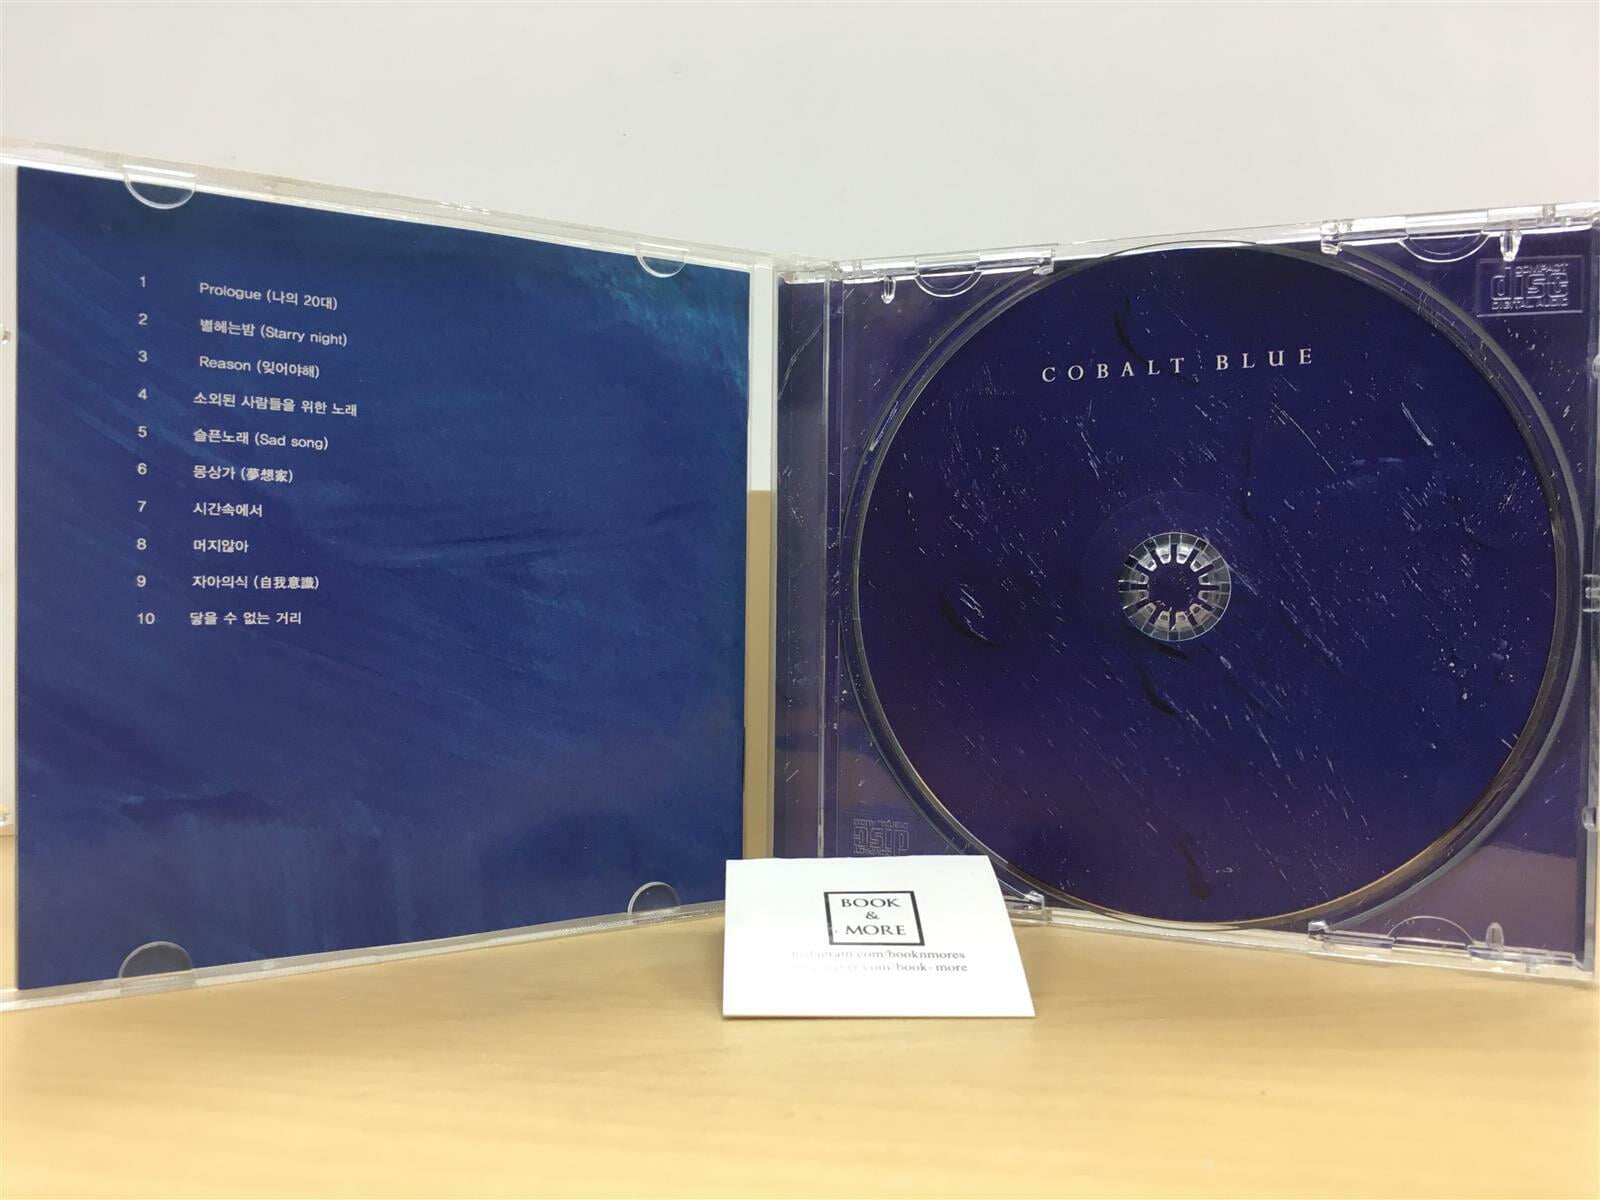 (CD)코발트 블루 - 1집 / 상태 : 최상 (설명과 사진 참고)